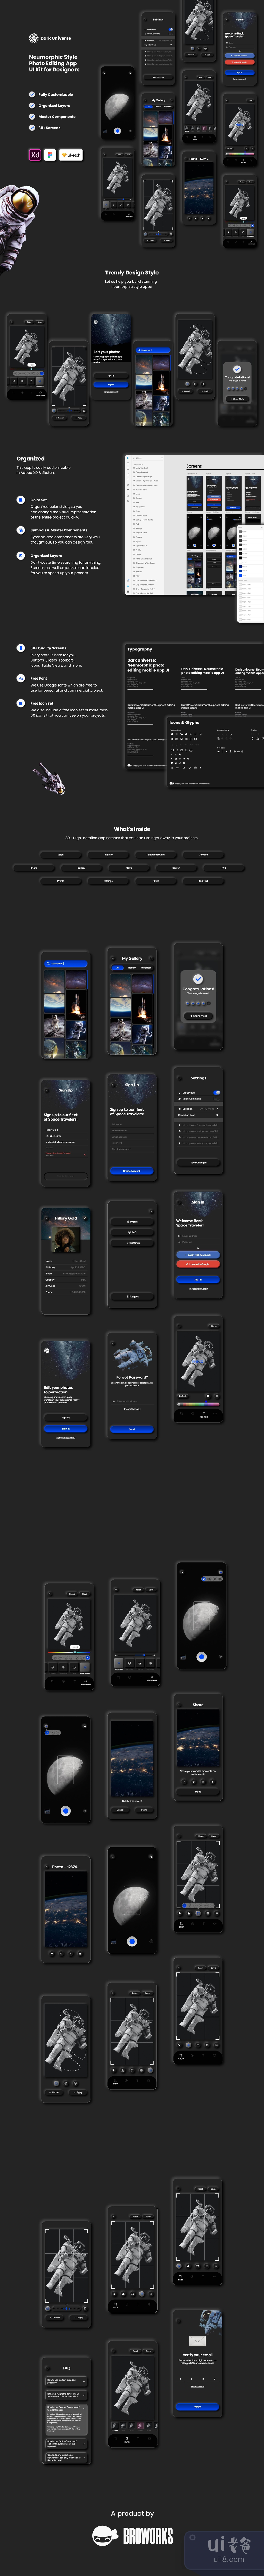 黑暗宇宙 - 照片编辑App设计插图